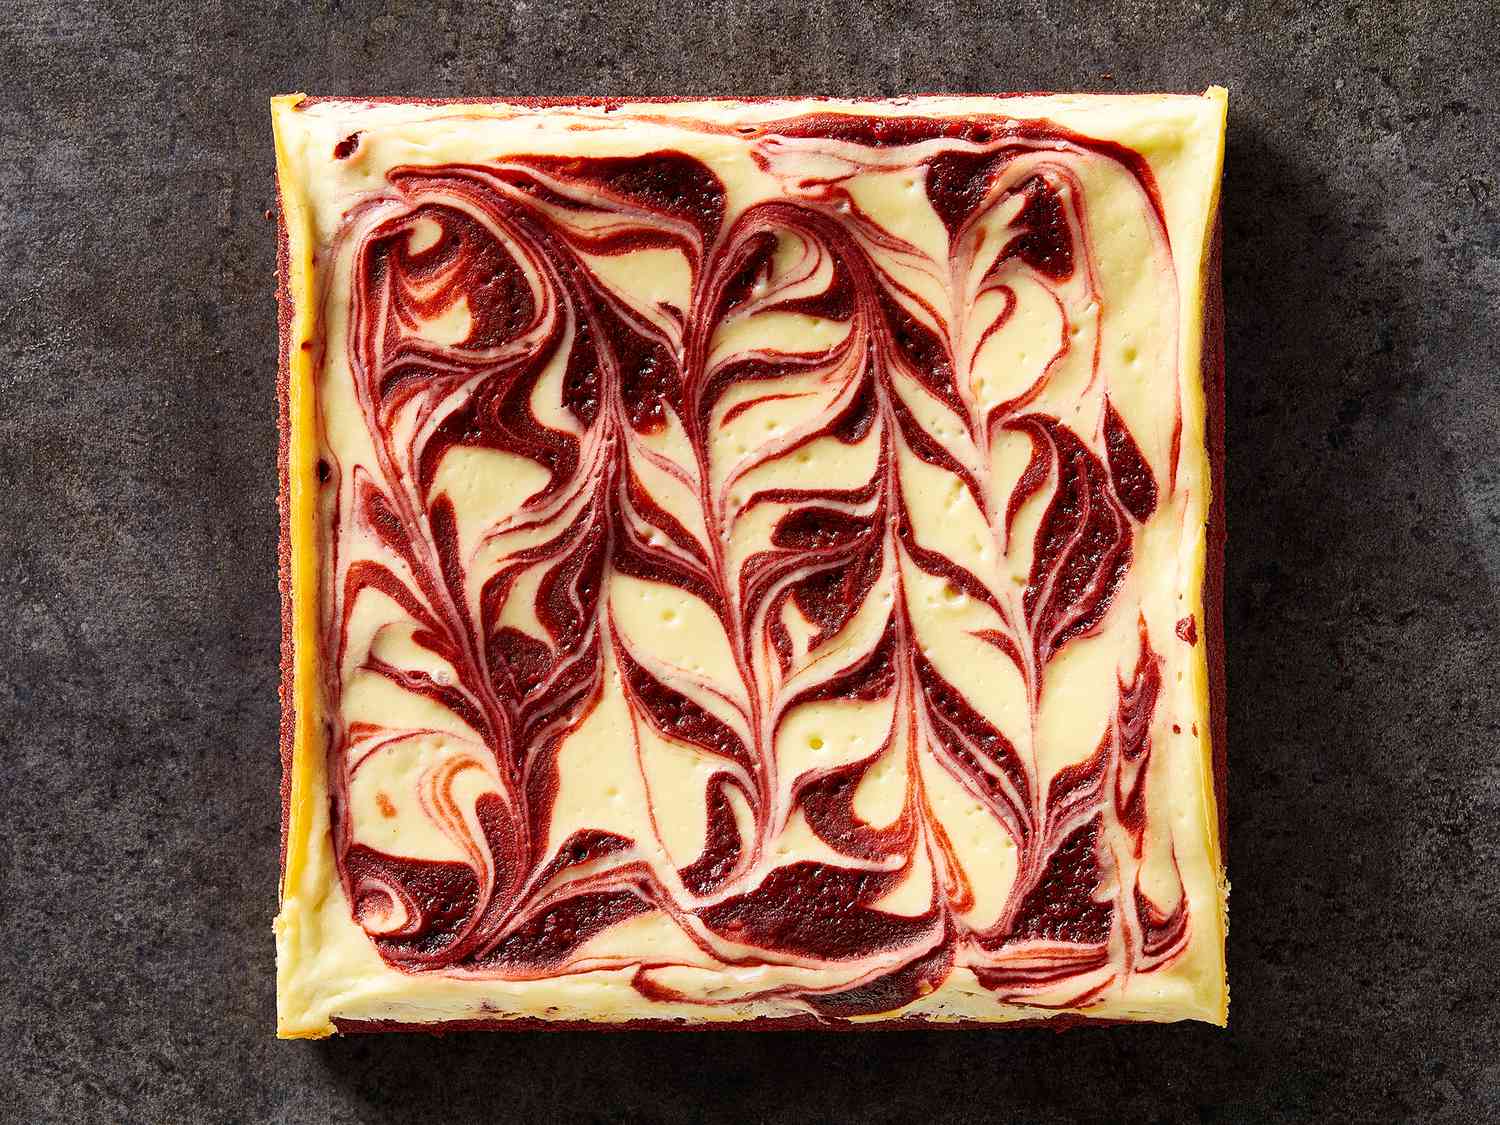 Красный бархатный чизкейк вихревые пирожные